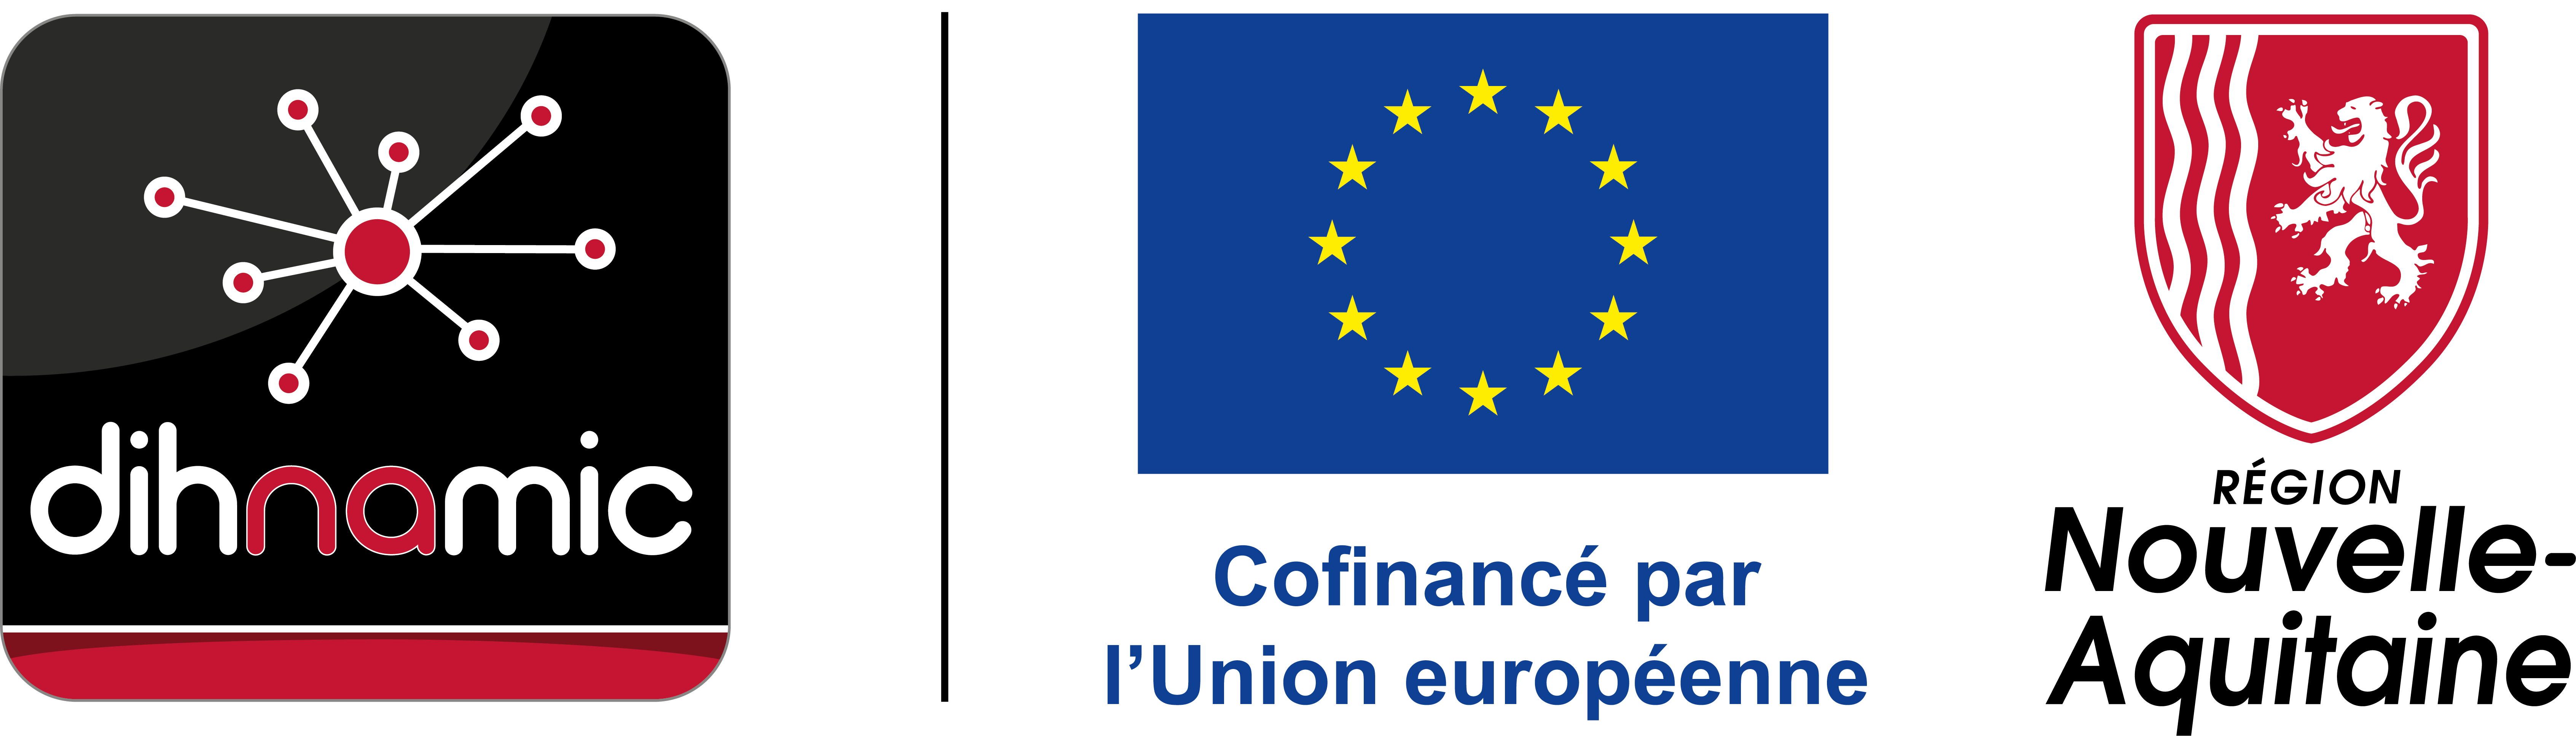 Dihnamic - Europe - Région Nouvelle-Aquitaine